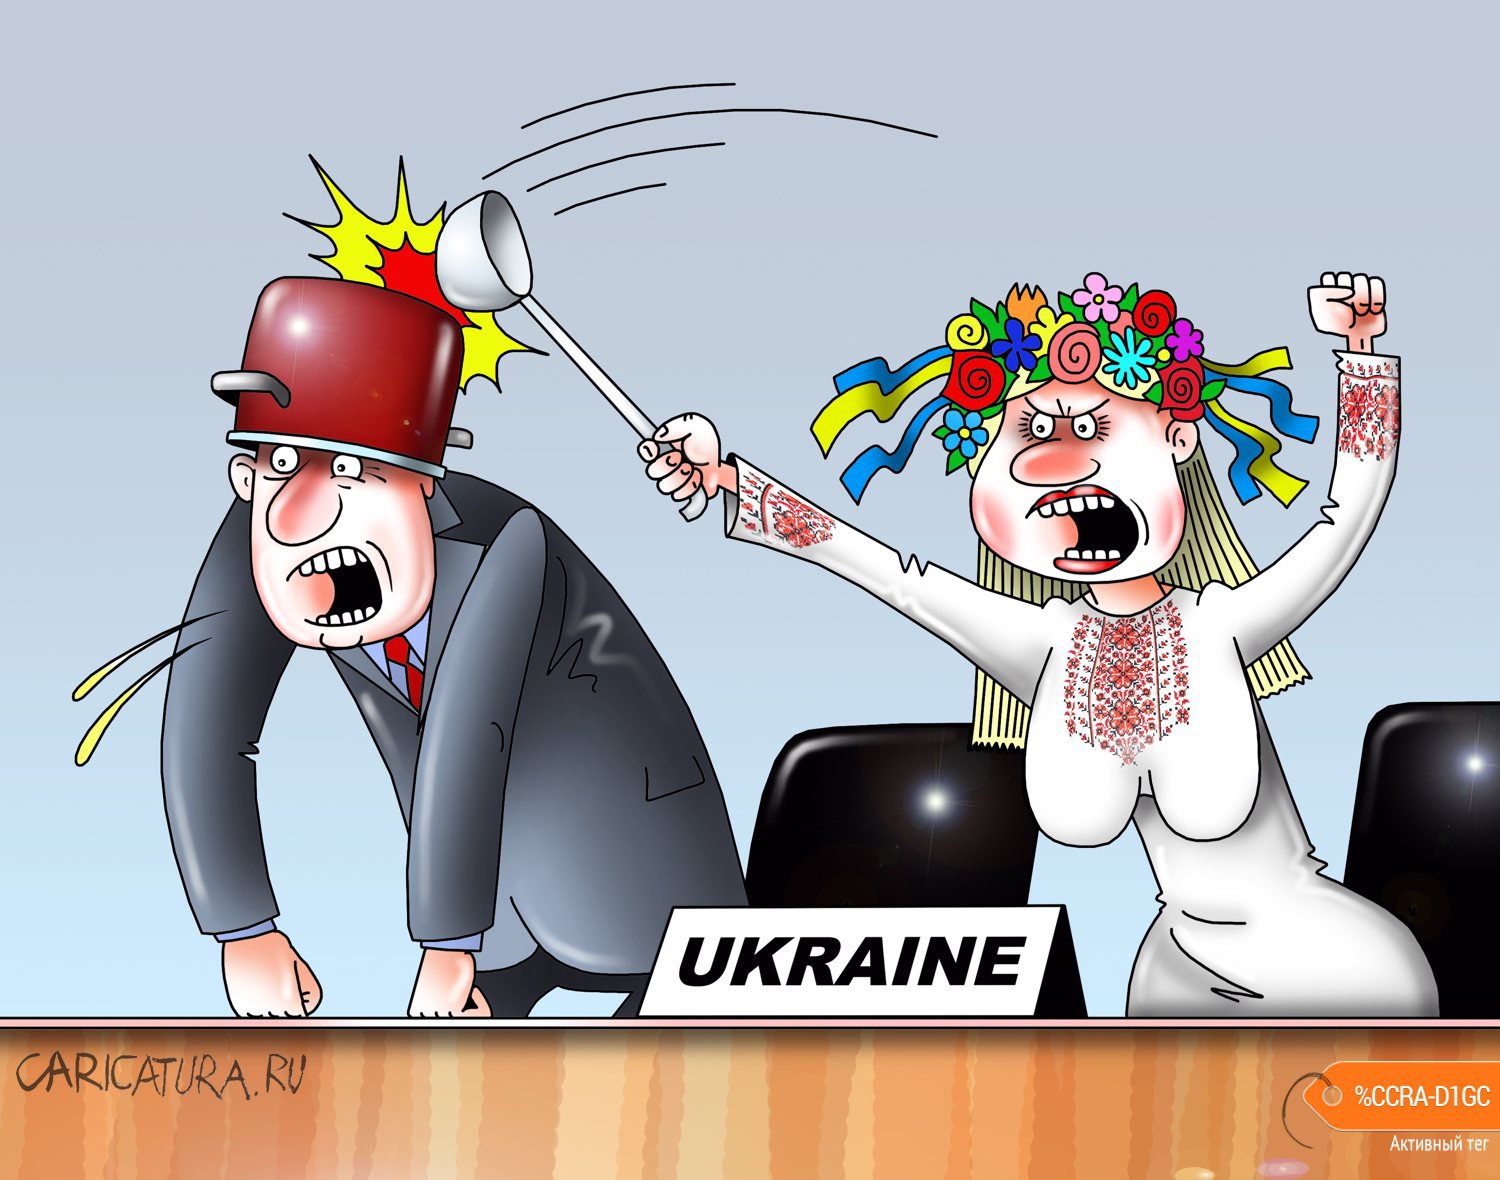 Карикатура "Делегаты Украины сорвали выступление представителя", Сергей Корсун